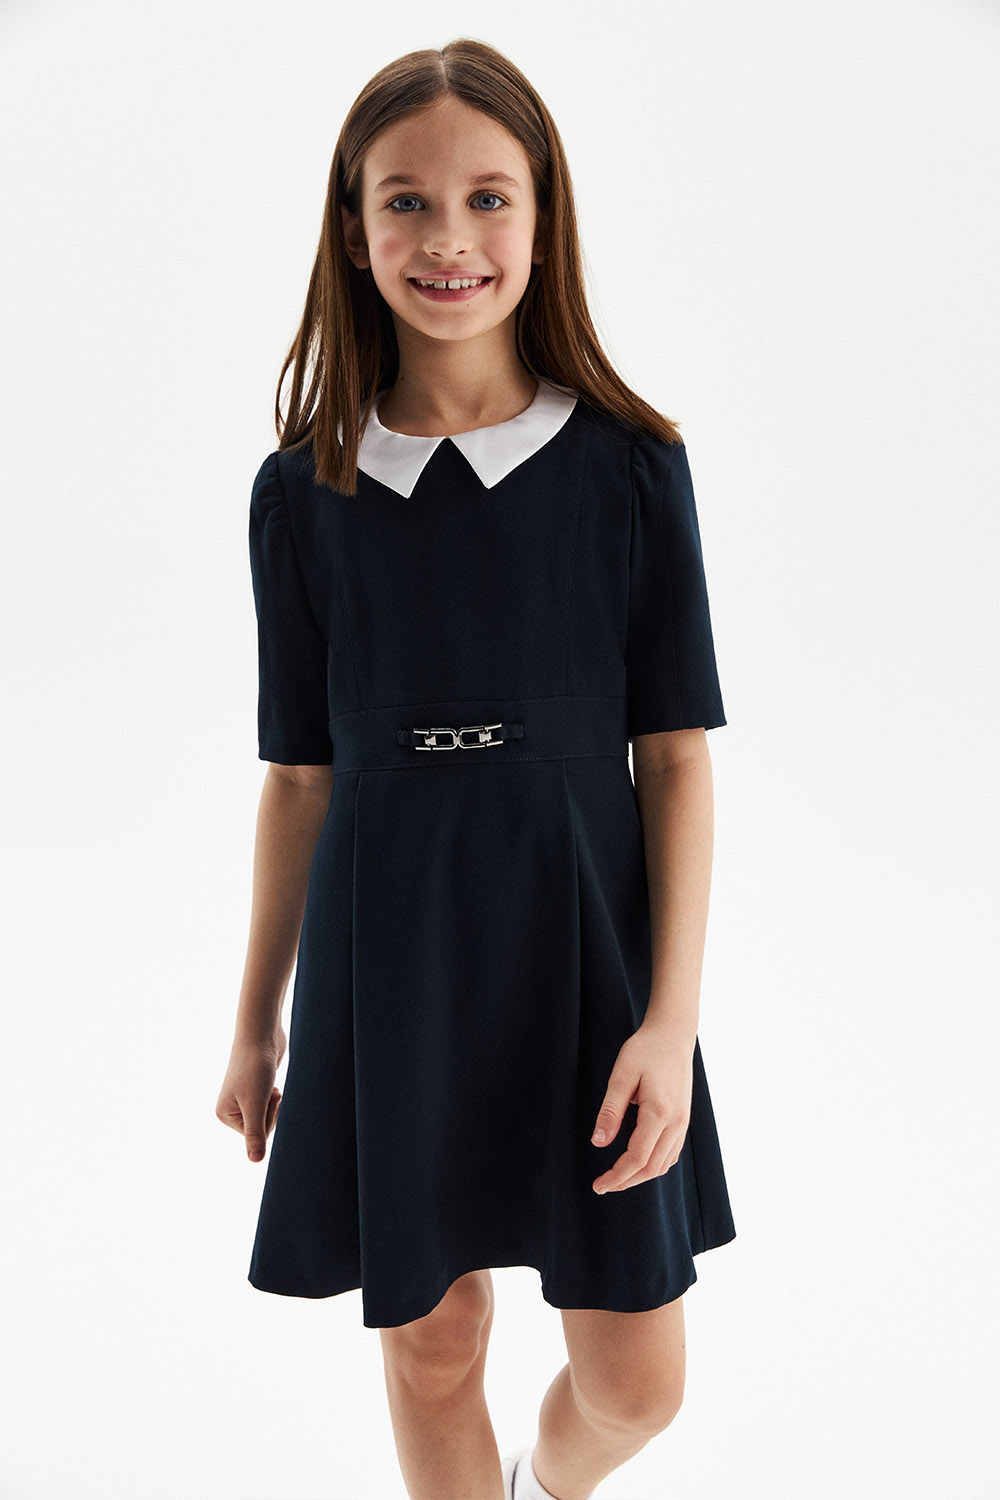 Приталенное школьное платье со съемным воротничком (SSFSG-229-23602-300) Silver Spoon